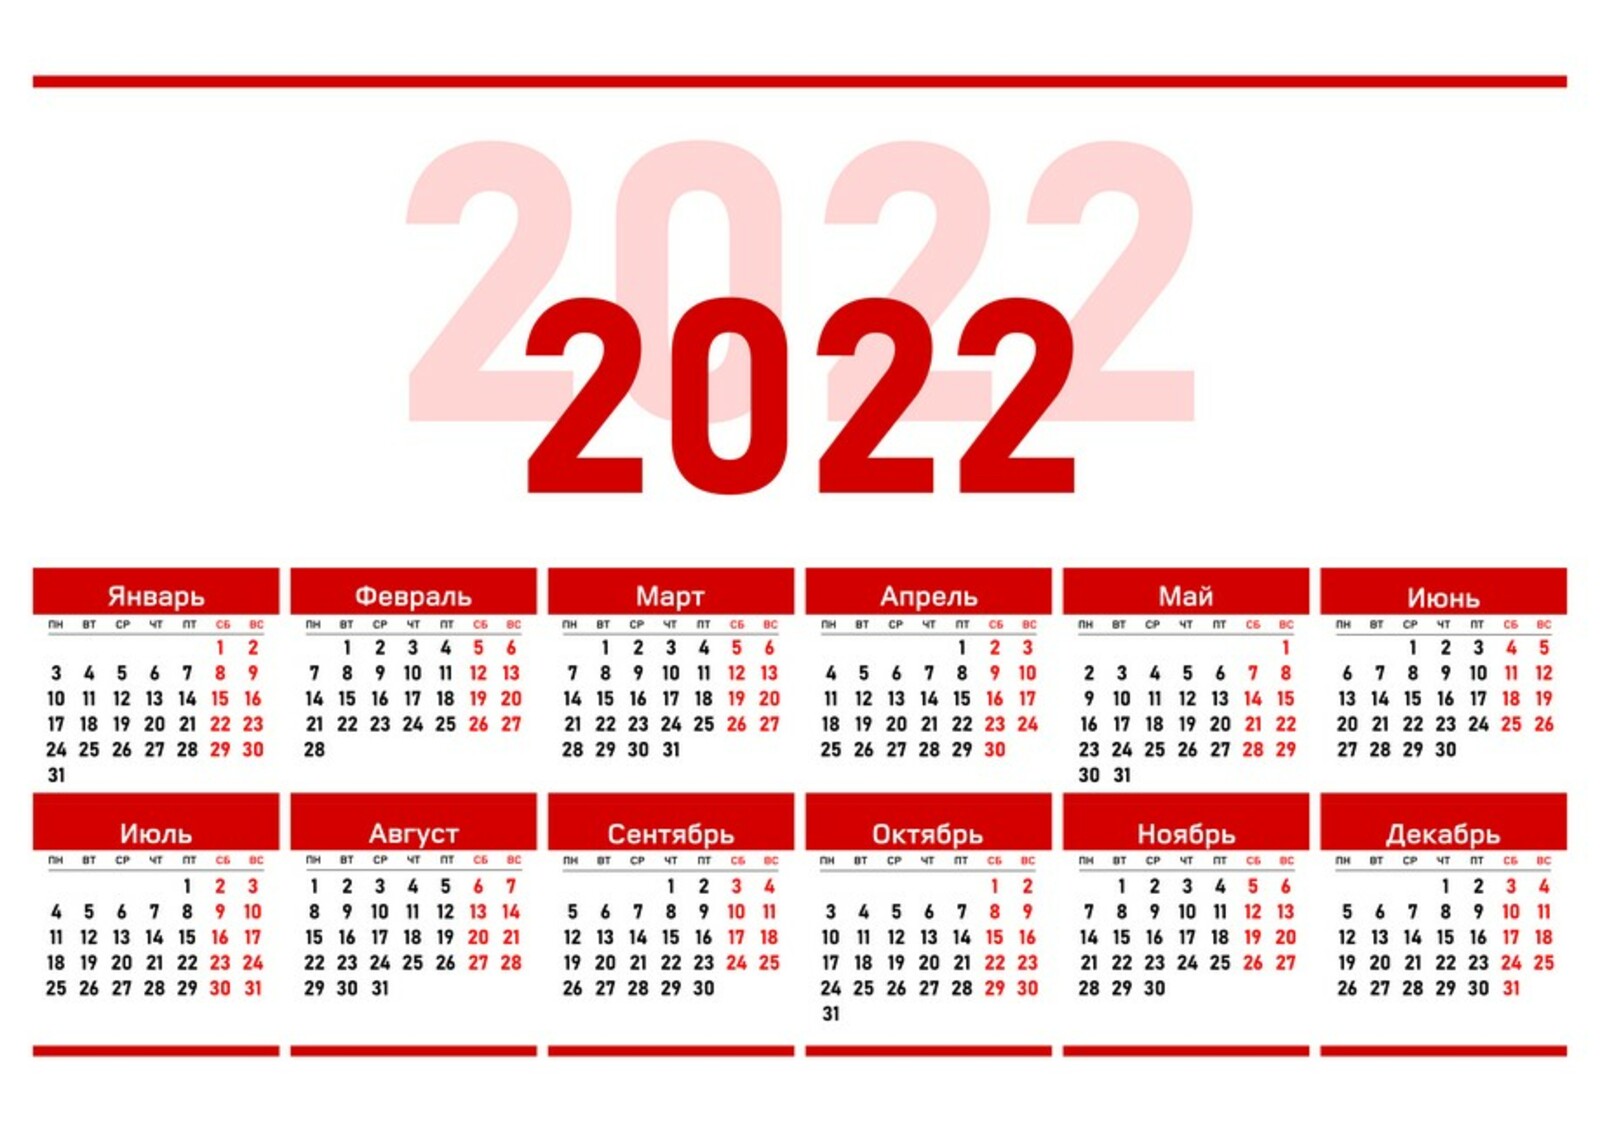 Недели месяца 2022. Производственный календарь 2022. Календарь на 2022 год ЛНР. Официальные праздники 2022 года в России. Выходные дни в 2022 году в России.